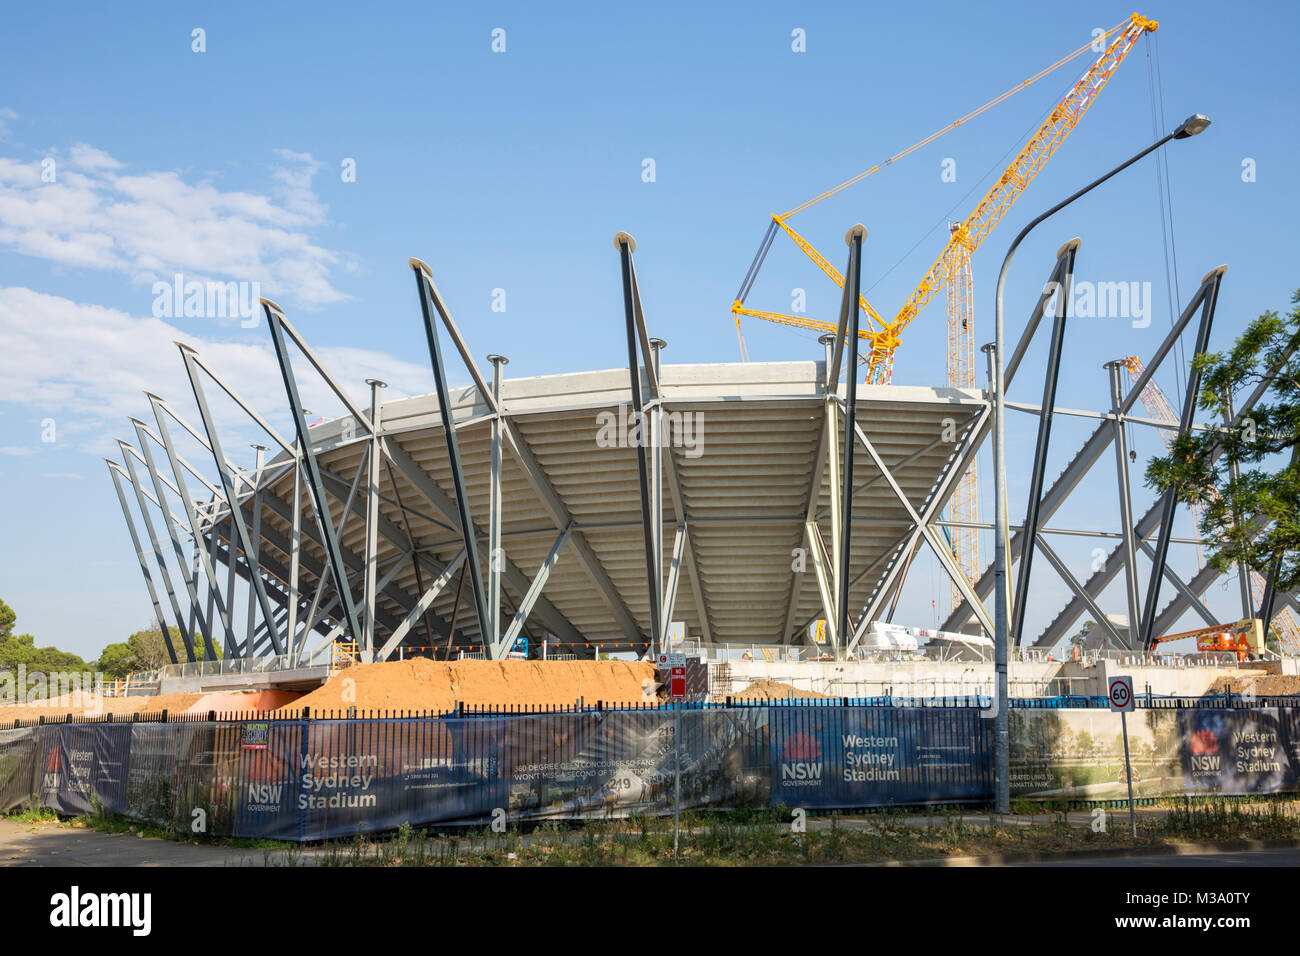 Le gouvernement de Nouvelle-Galles du Sud est en train de construire un nouveau stade de Western Sydney Parramatta, Sydney, Australie Banque D'Images